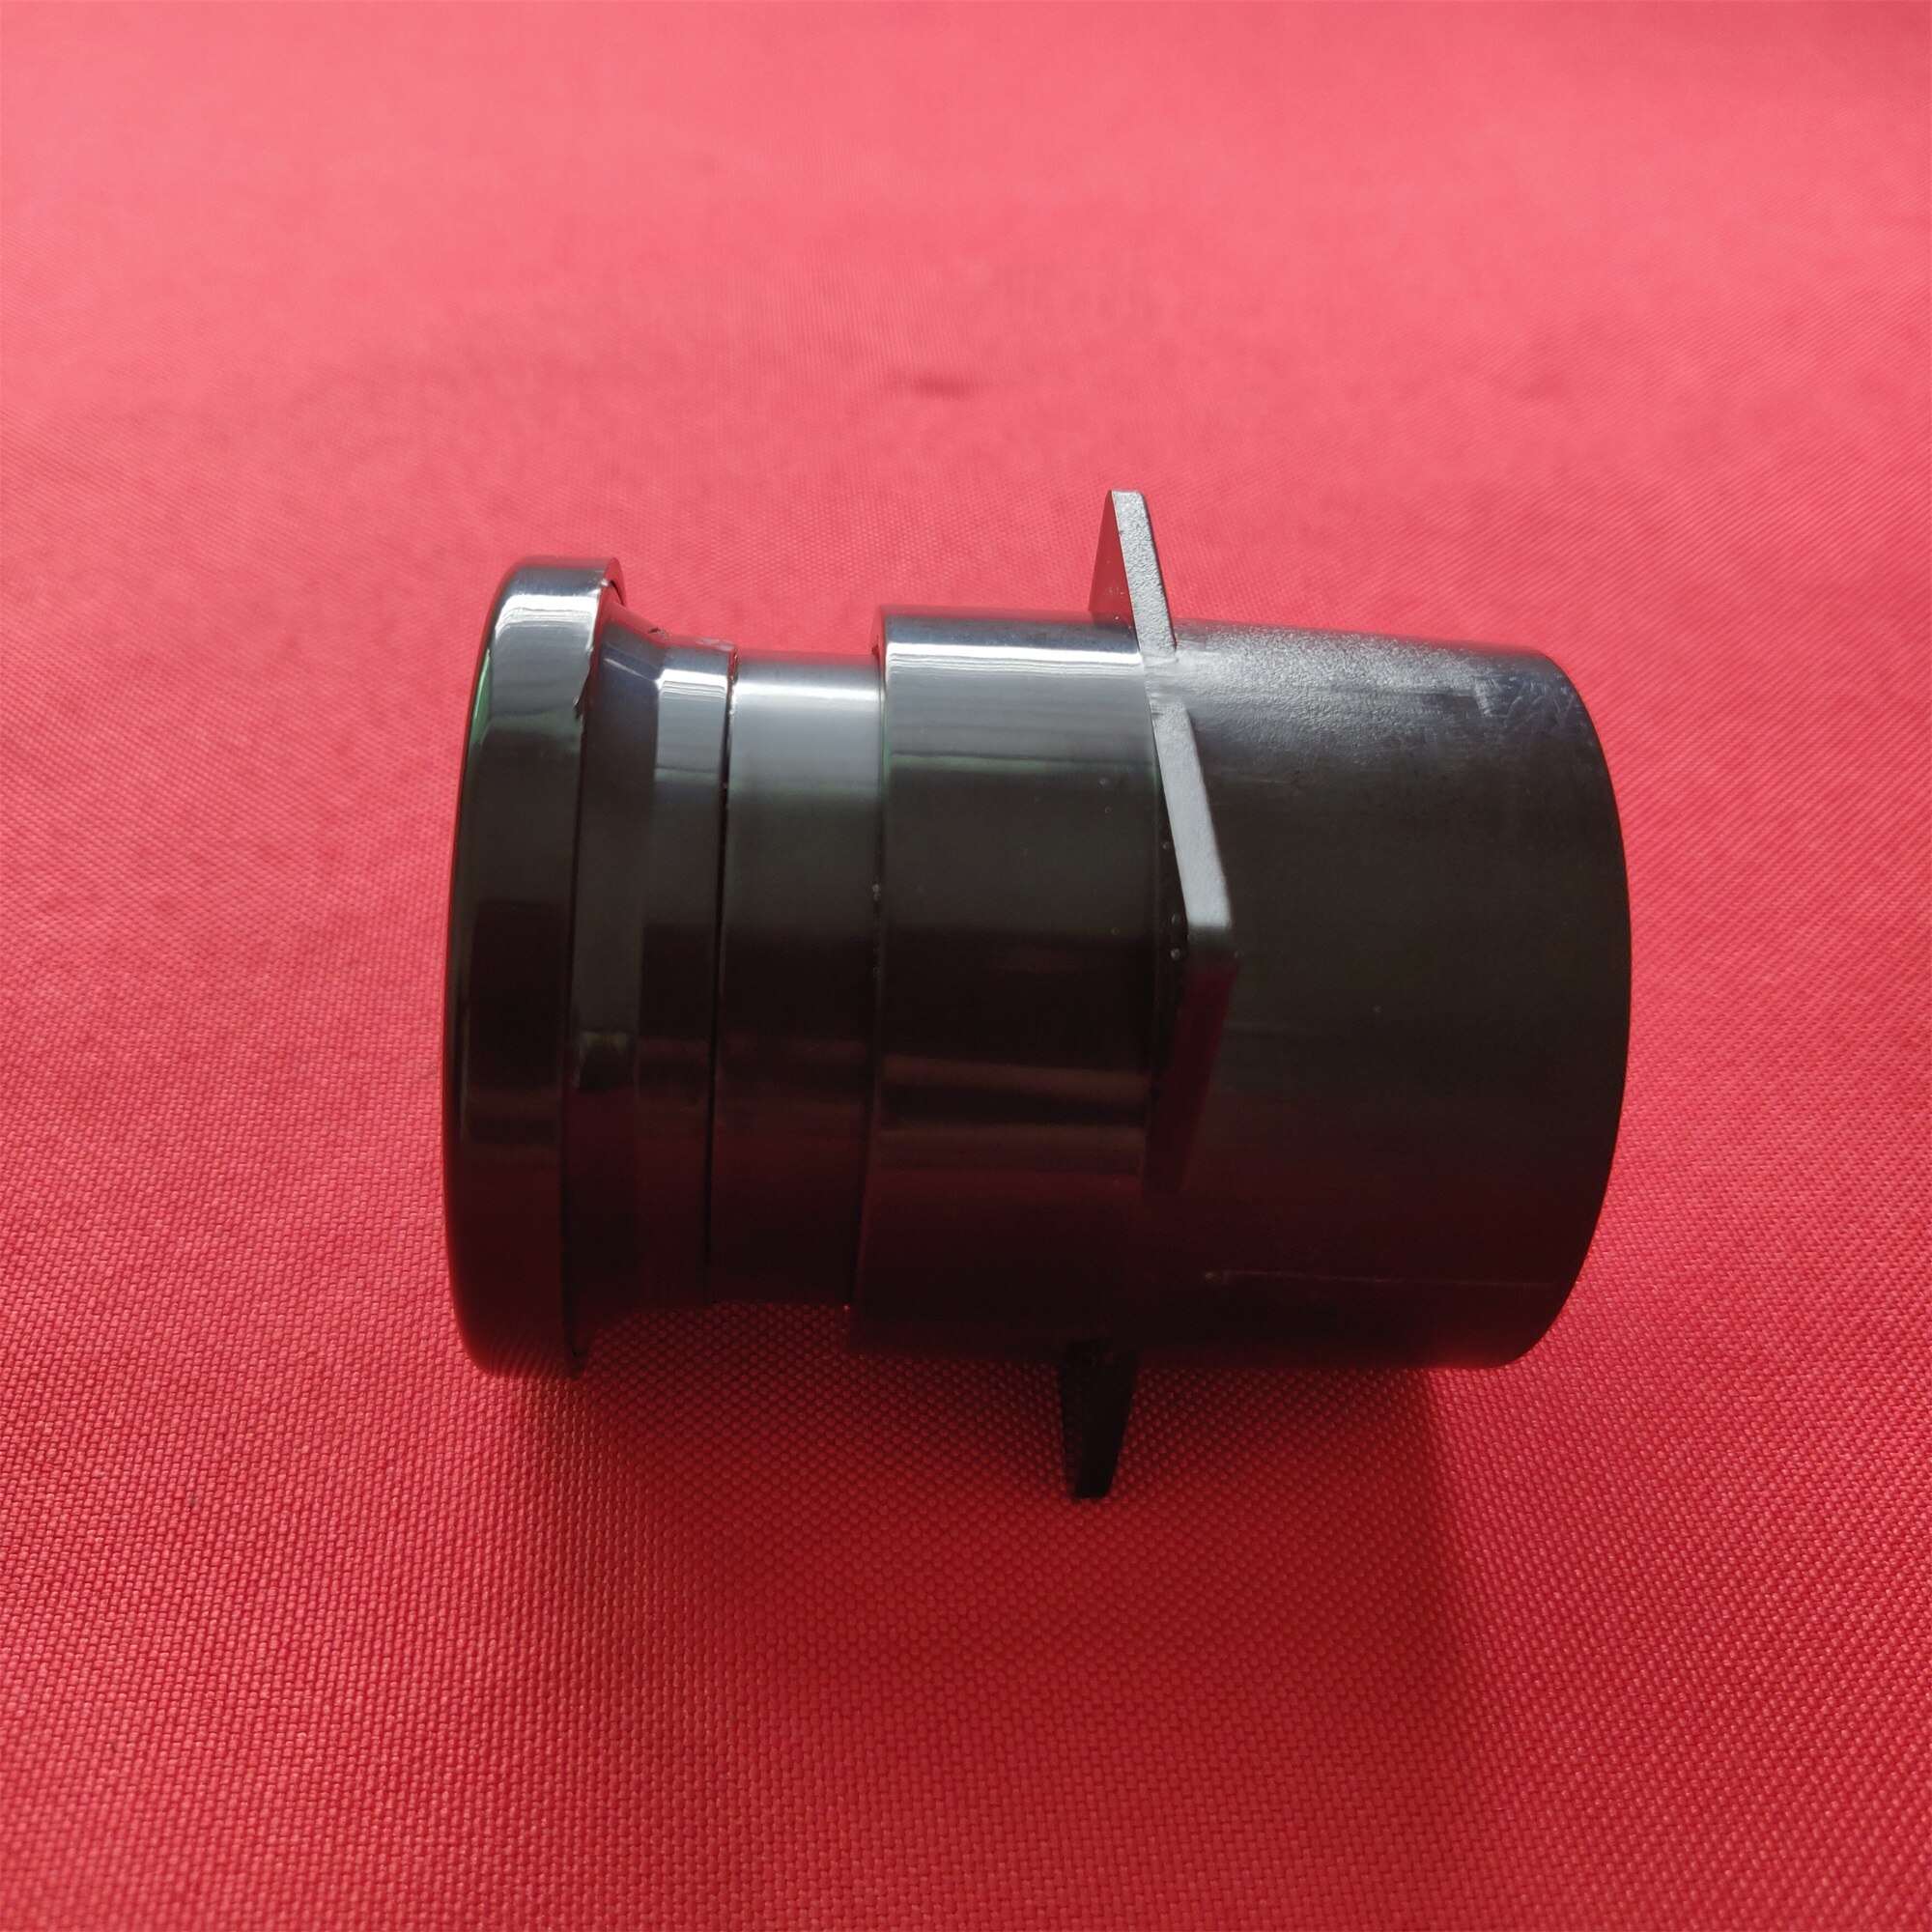 Mini projektor allgemeine verwendung objektiv F = 110mm für 2,4 Zoll FÜHRTE projektor reparatur